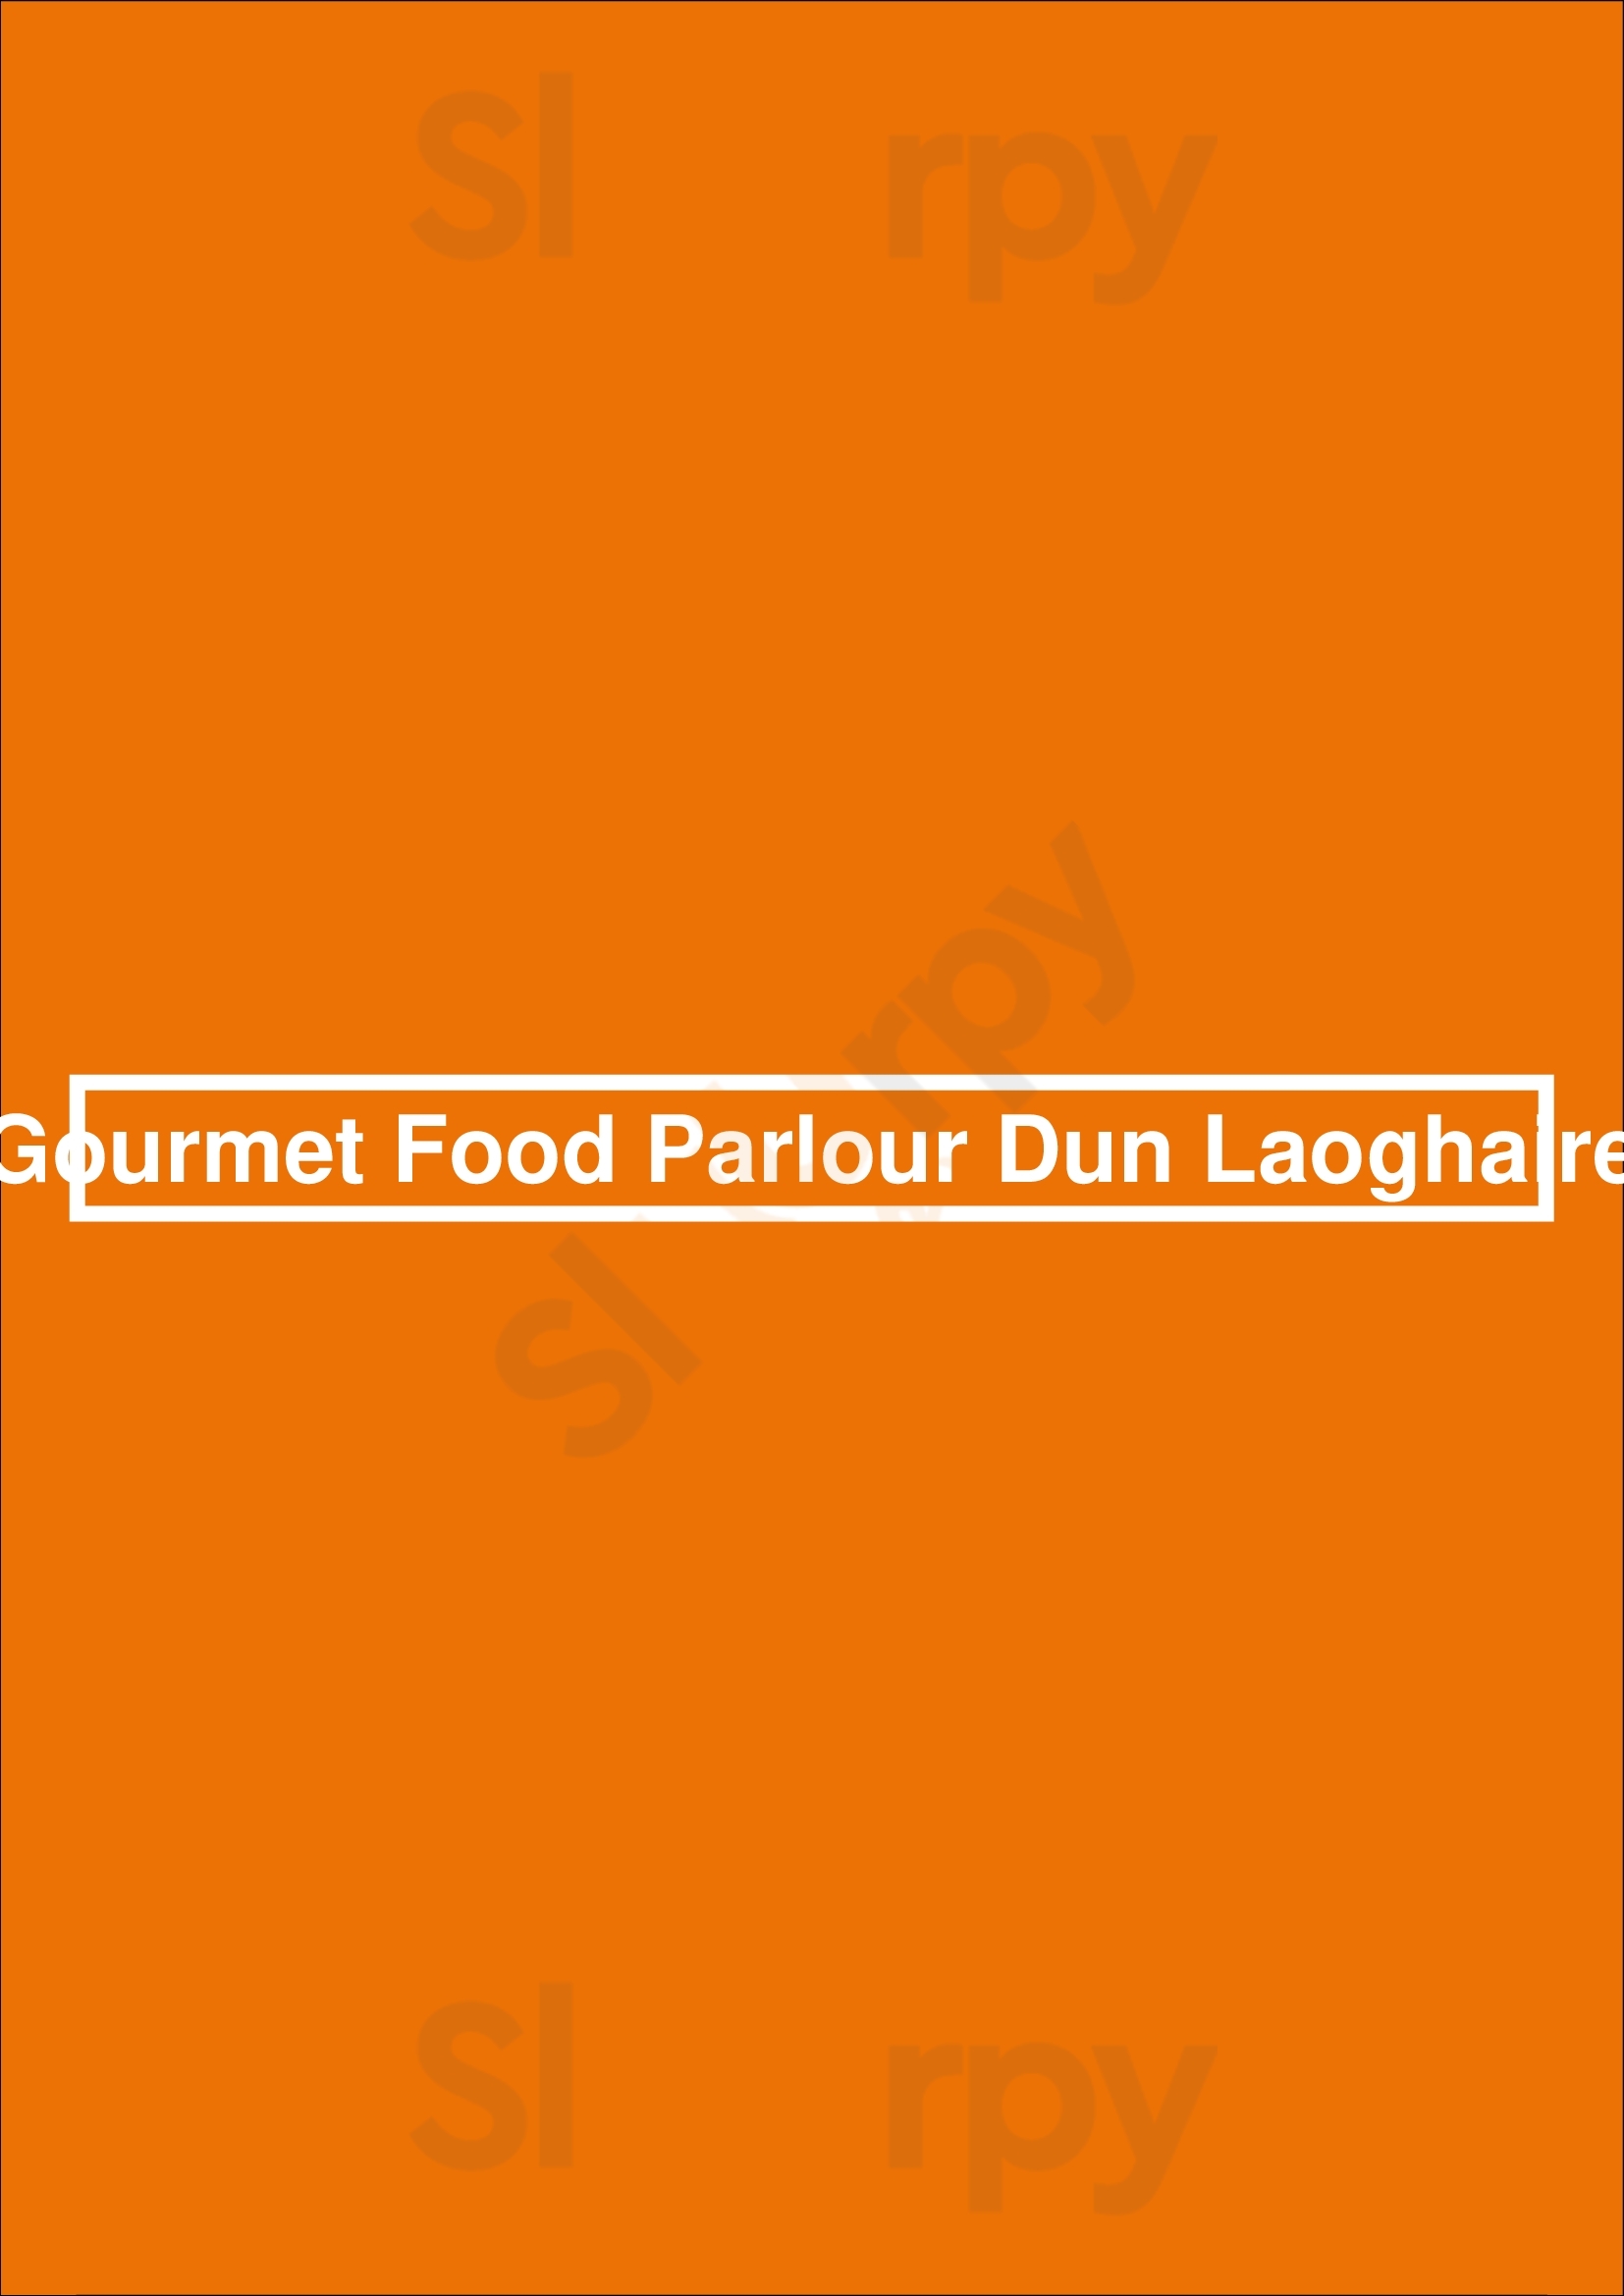 Gourmet Food Parlour Dun Laoghaire Dun Laoghaire Menu - 1